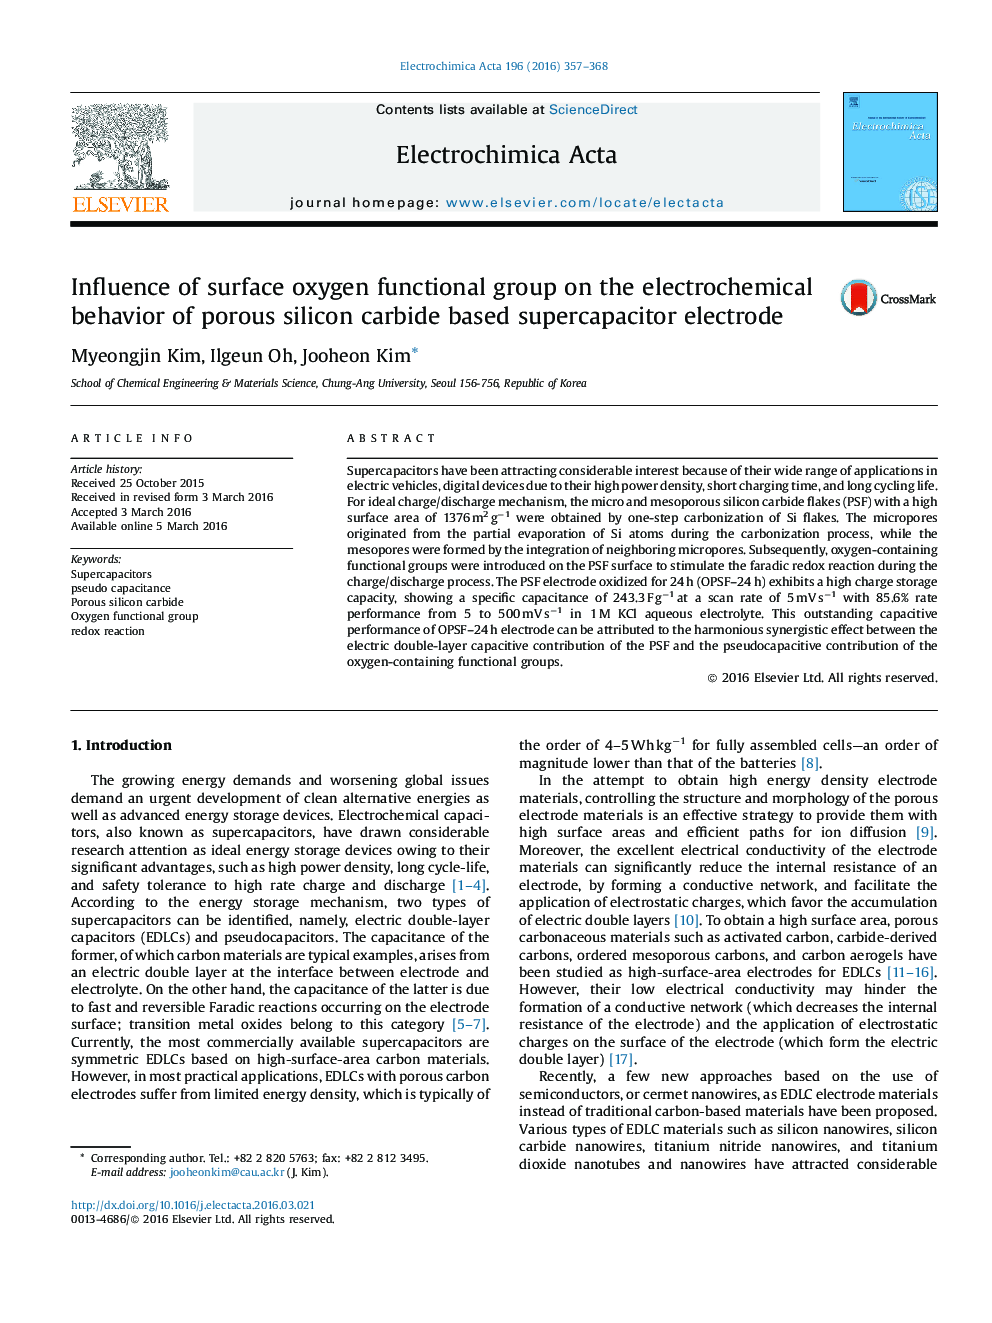 تأثیر گروه عملکردی اکسیژن سطحی بر رفتار الکتروشیمیایی الکترود سوپراسپرتزر مبتنی بر کاربید متخلخل سیلیکون 